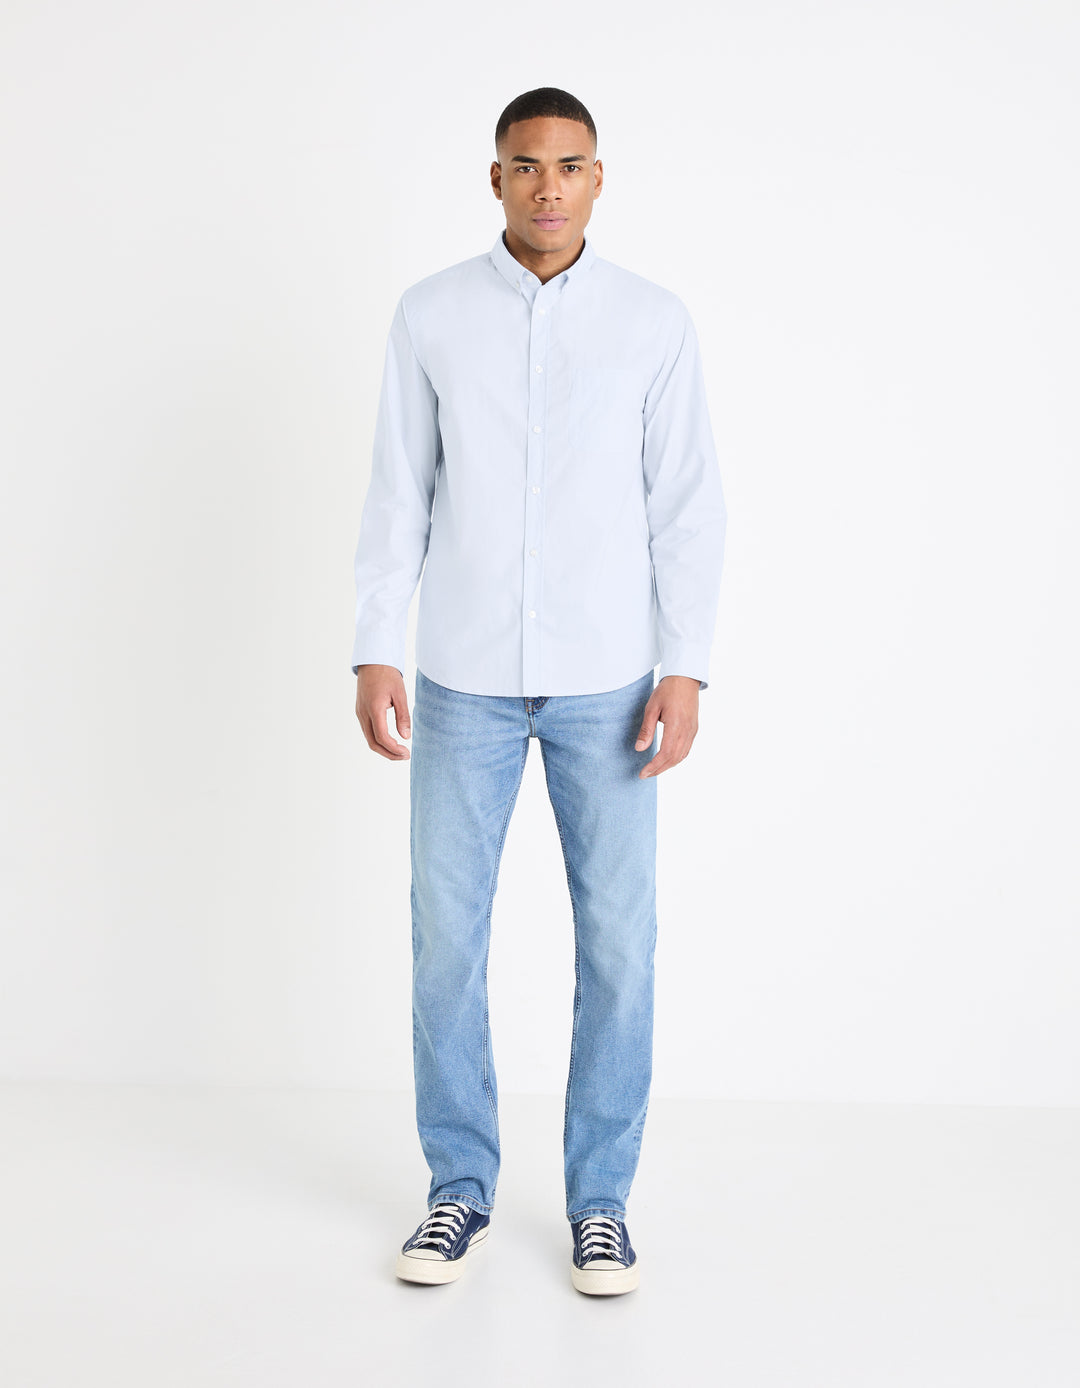 Regular buttoned collar shirt 100% cotton